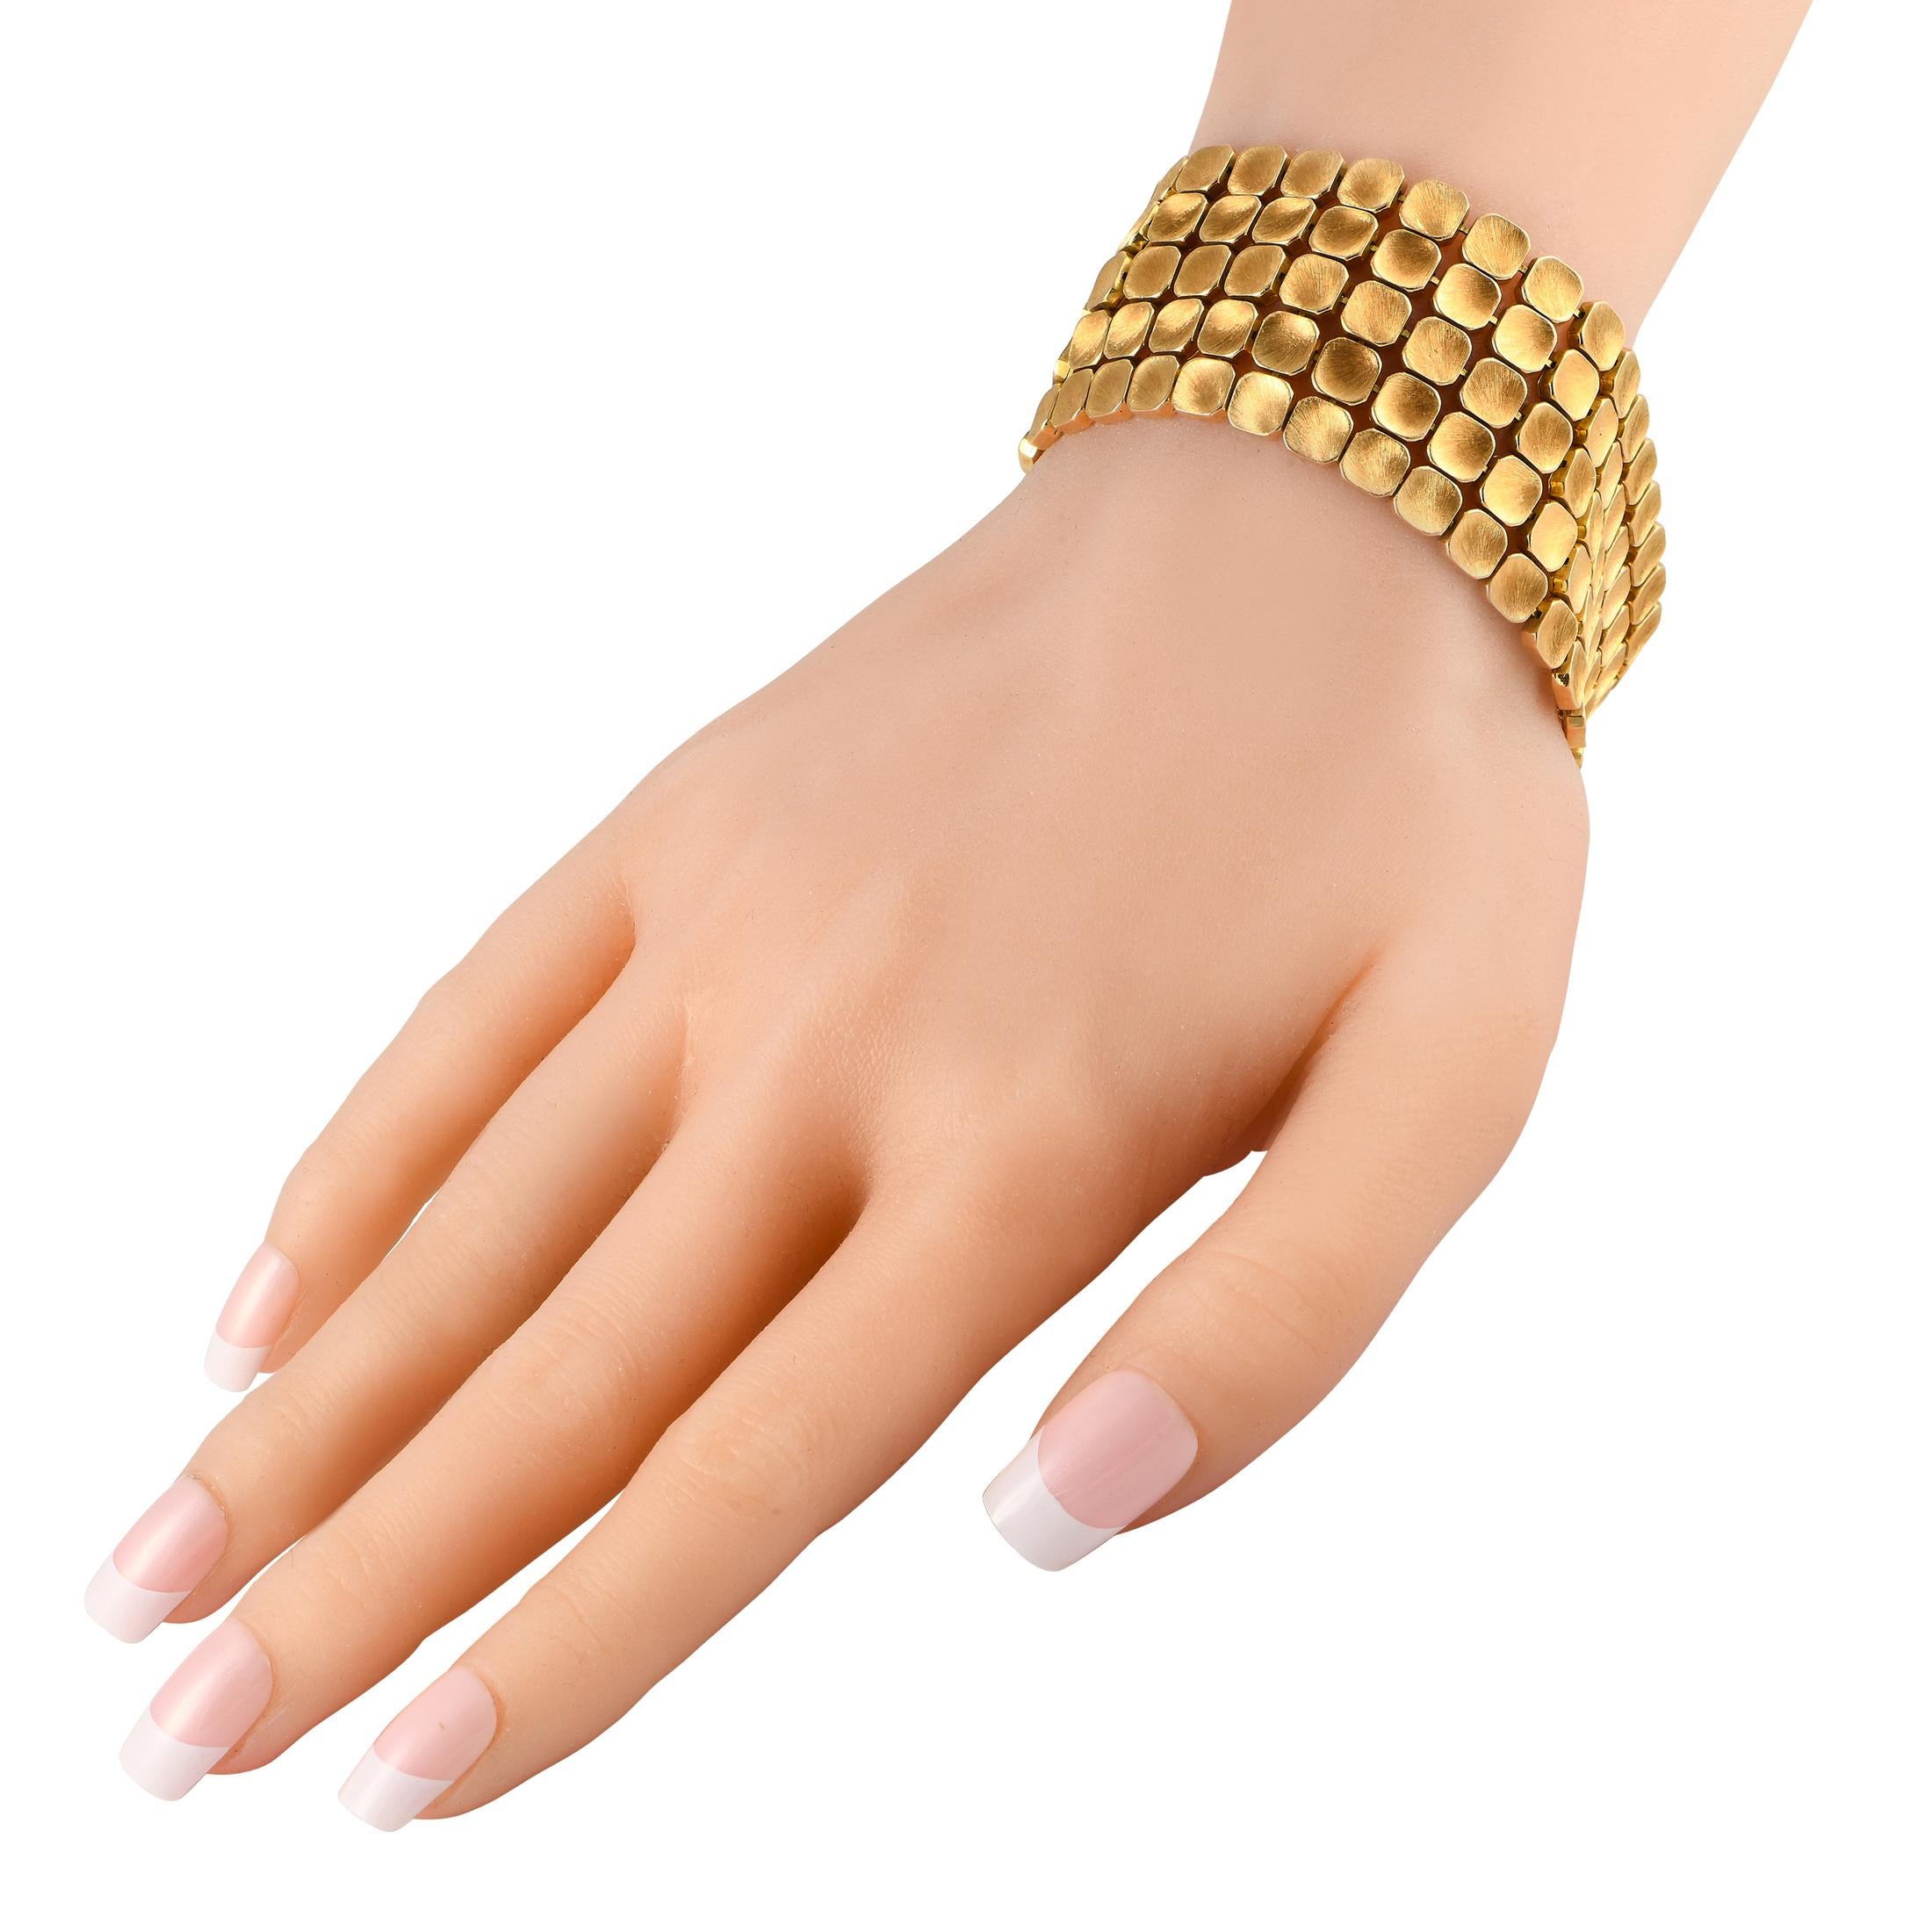 Changez de style et ajoutez instantanément de l'intérêt visuel à votre tenue avec ce magnifique bijou texturé. Ce bracelet en or jaune 18 carats est une ravissante création du célèbre orfèvre italien Mario Buccellati. Il se compose de minuscules